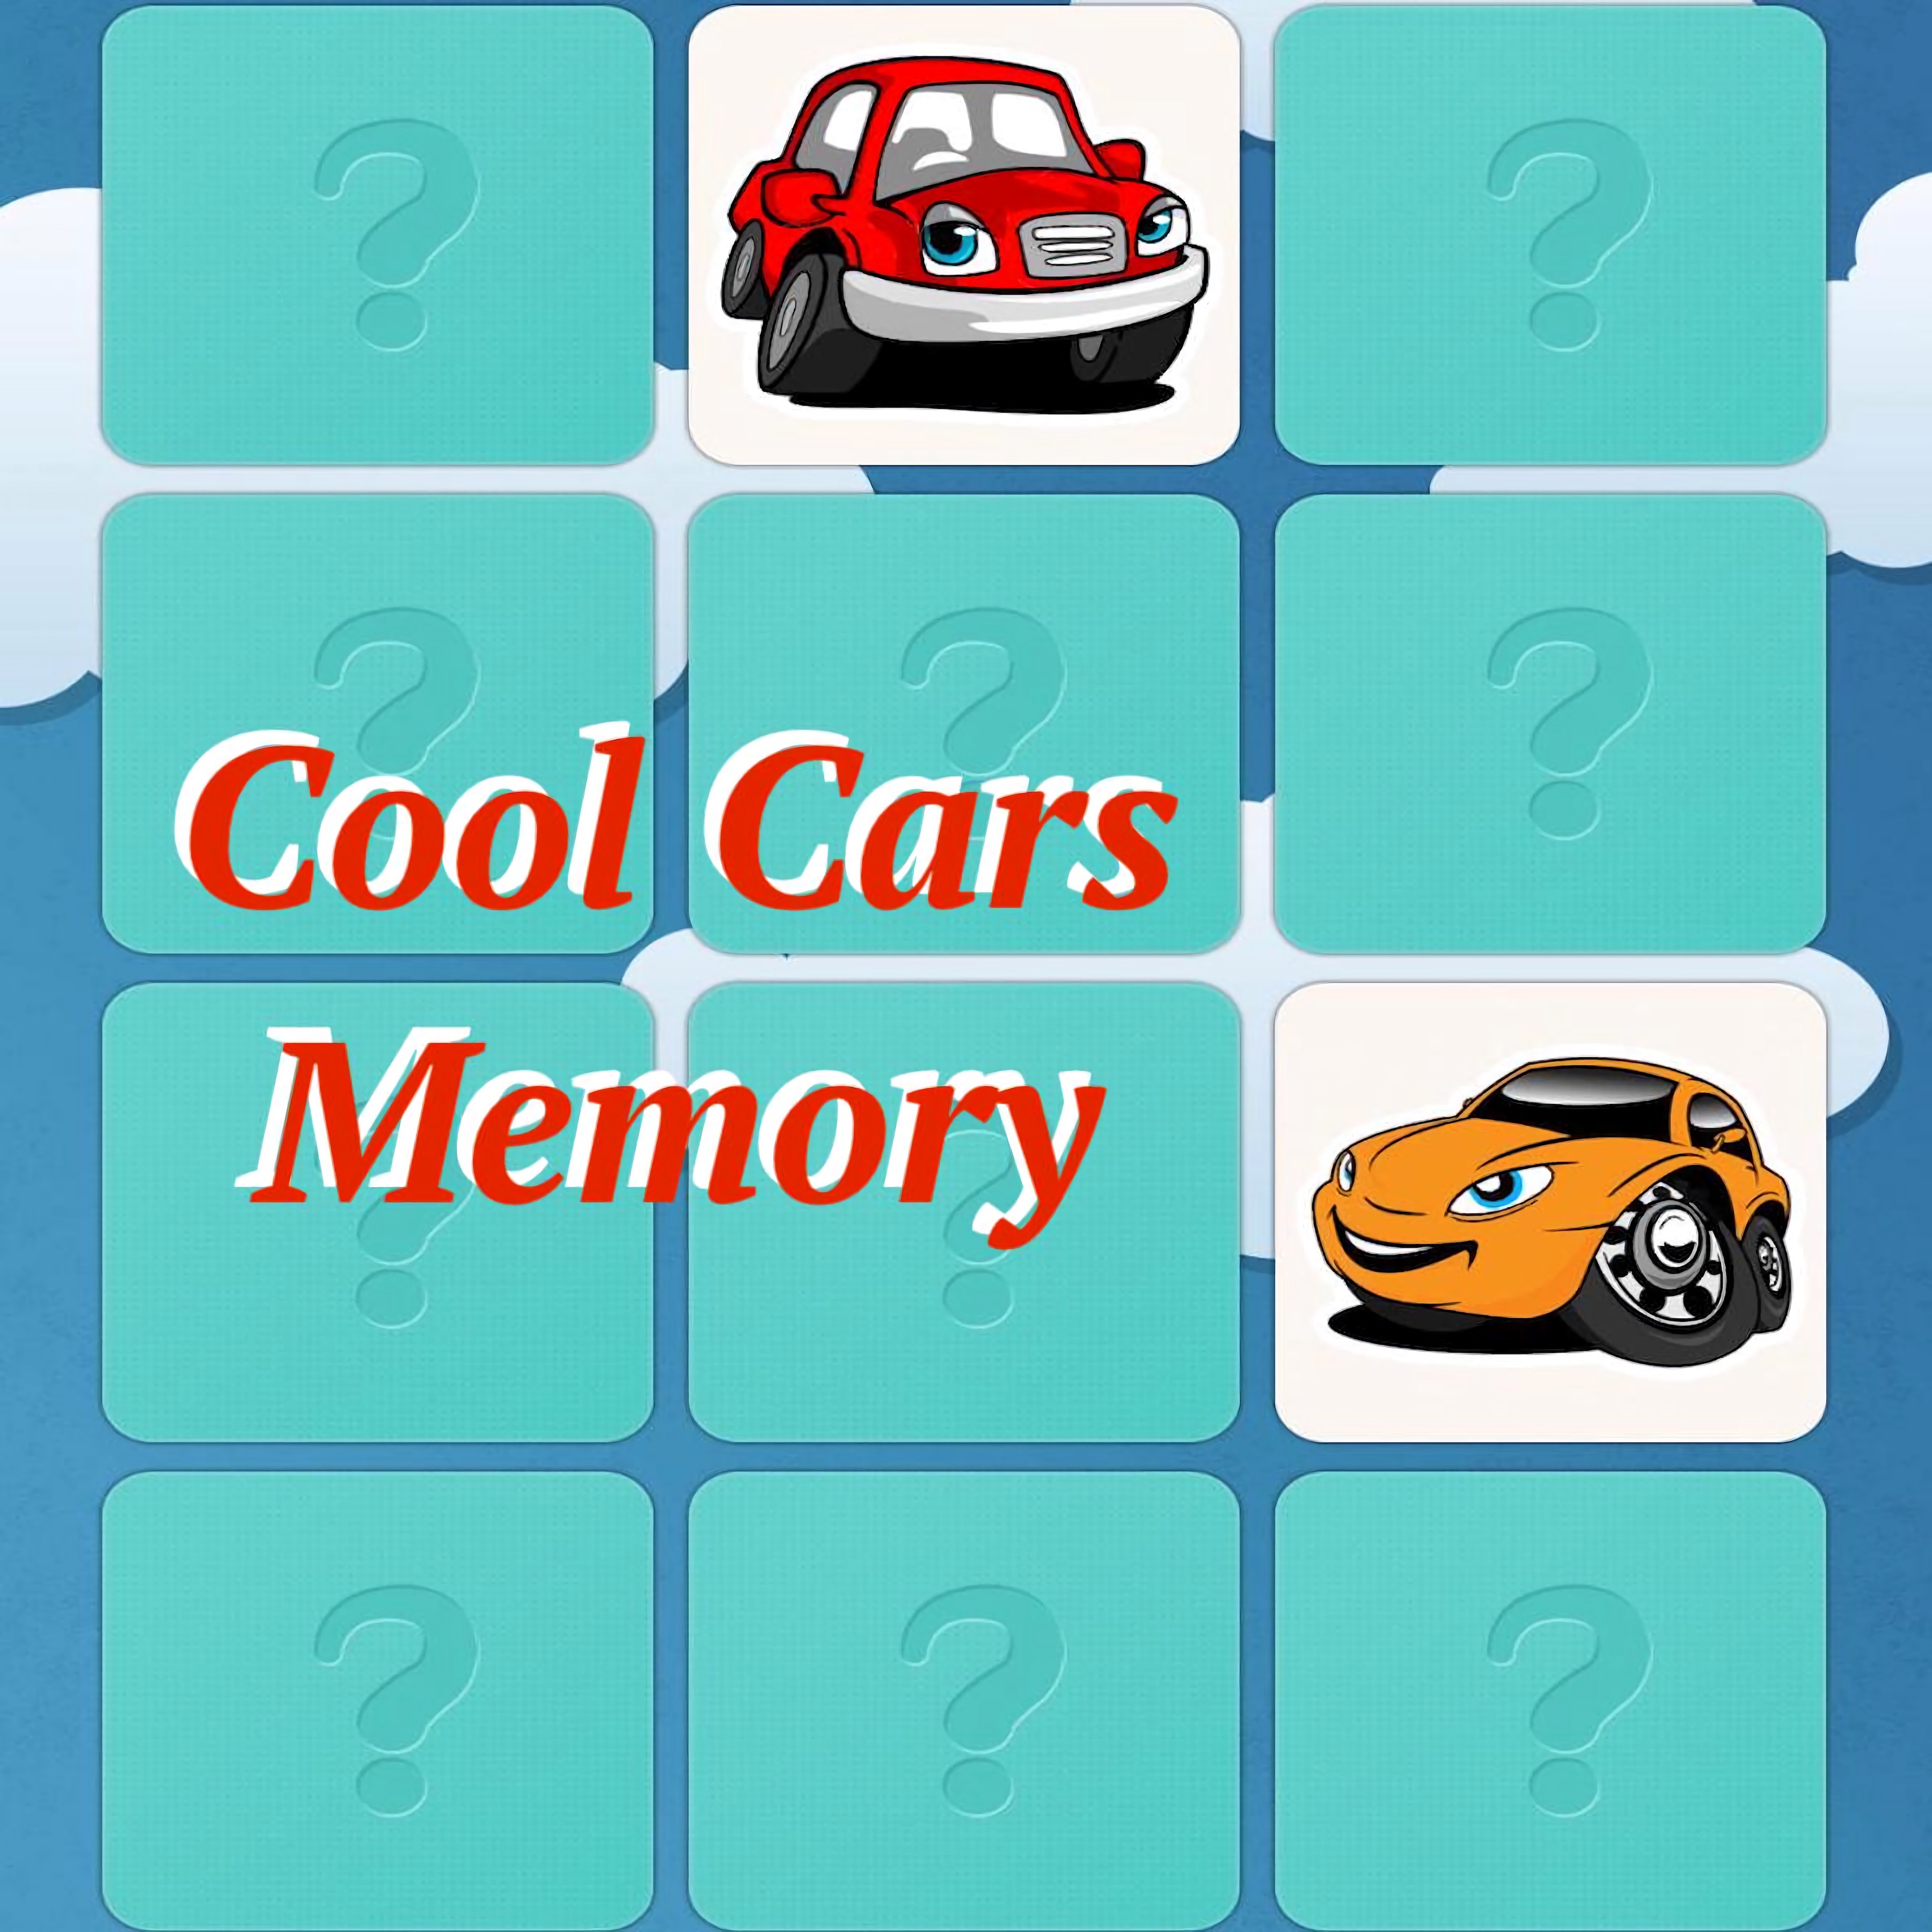 Cool Cars Memory